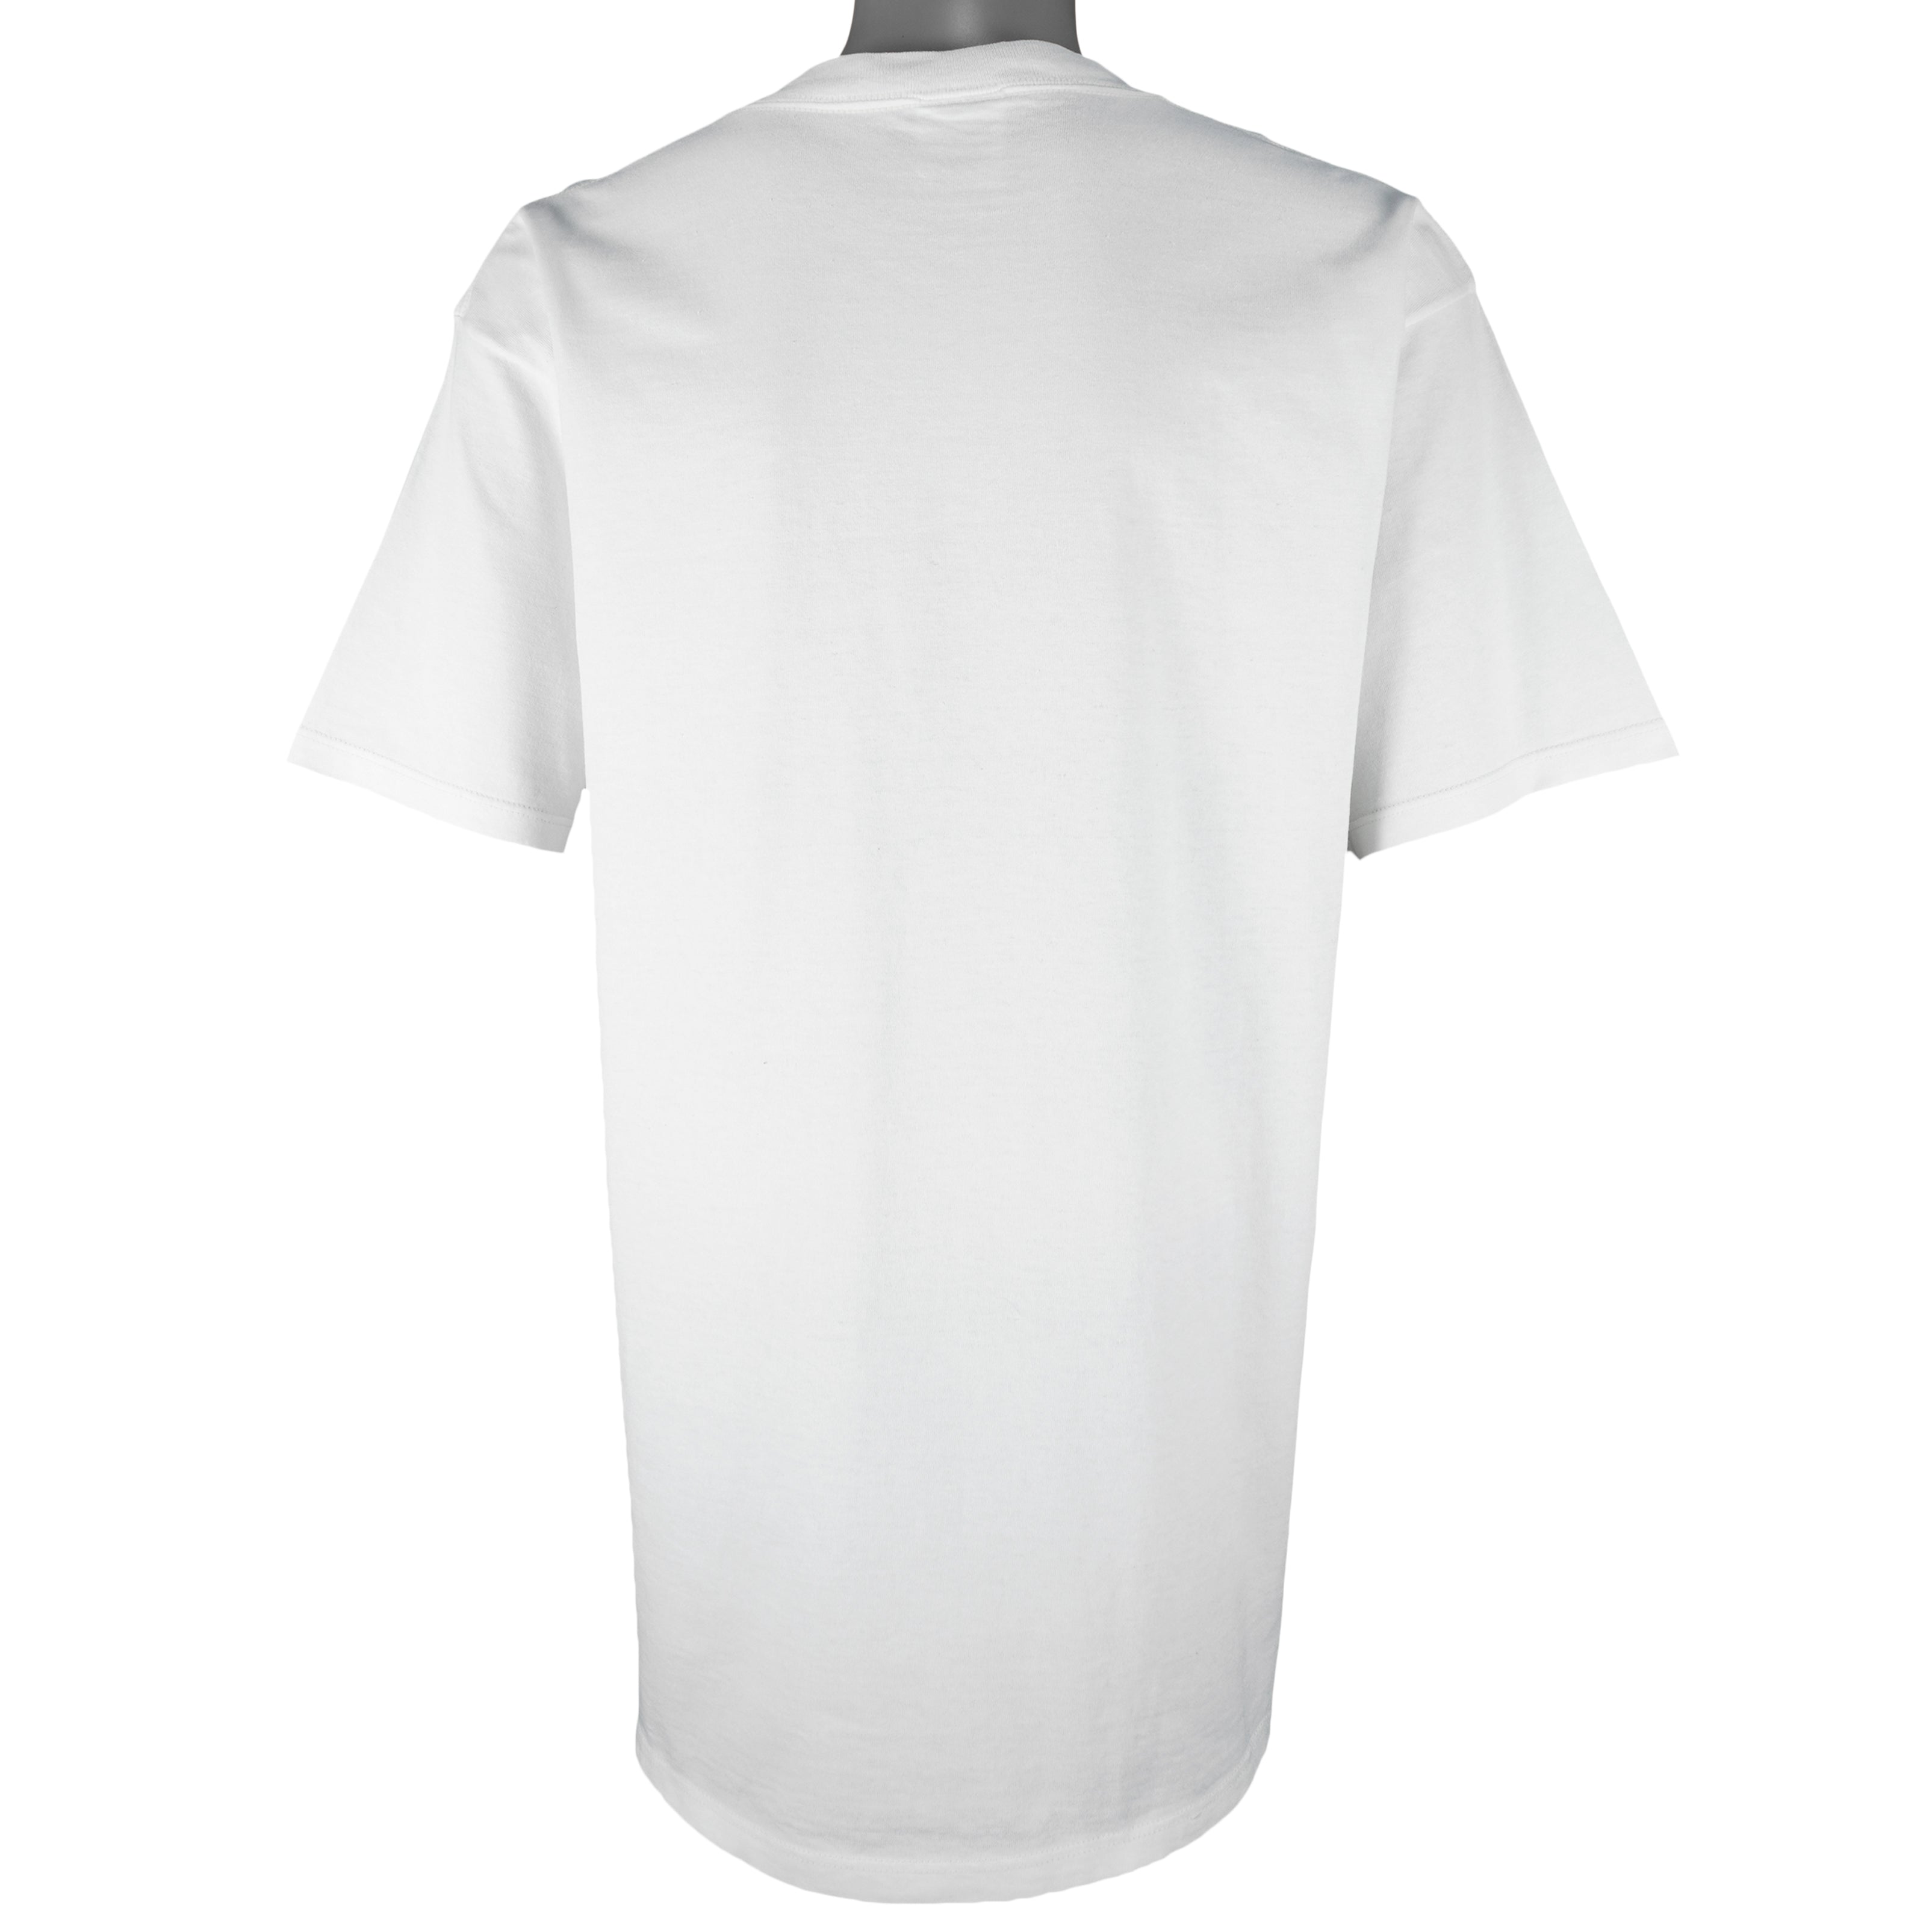 Cleveland Indians MLB Hot Trending 3D T-Shirt For Fans